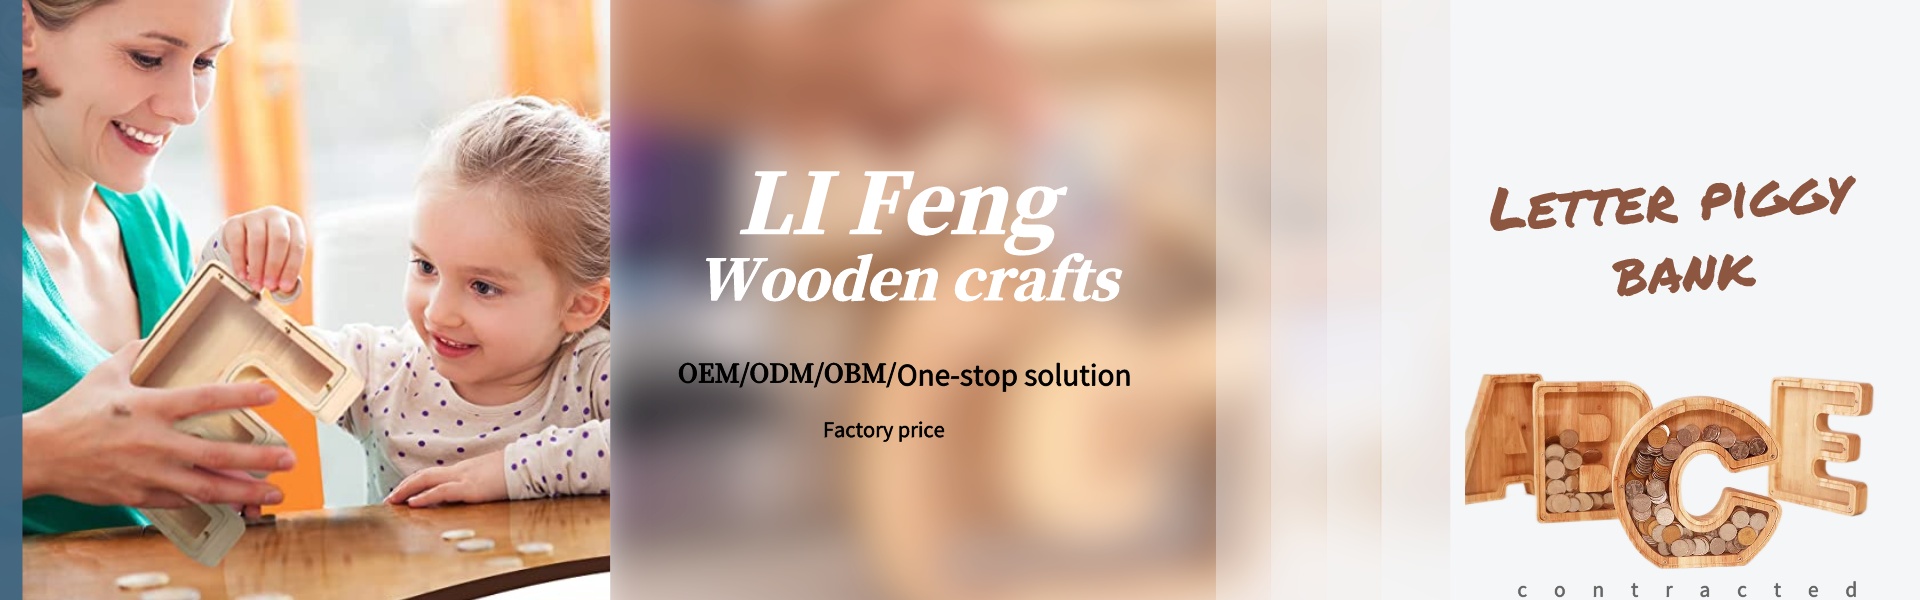 3D -Holz -Tierverzierungen, Holzbrief Schweinelufe, 3D -Holz -Weltkarte,Dongguan Houjie Lifeng Laser Engraving Craft Factory